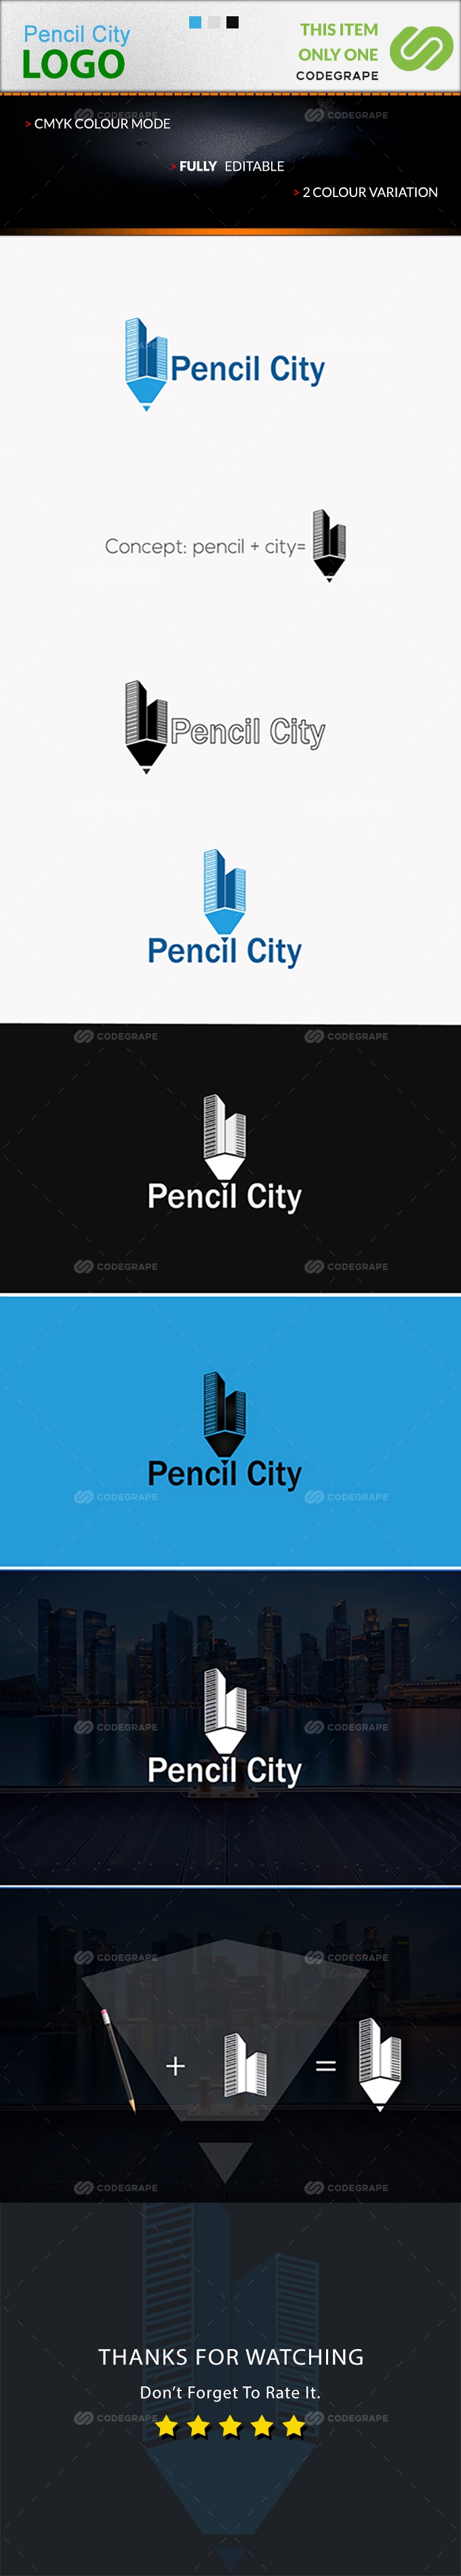 Creative Pencil City Logo design